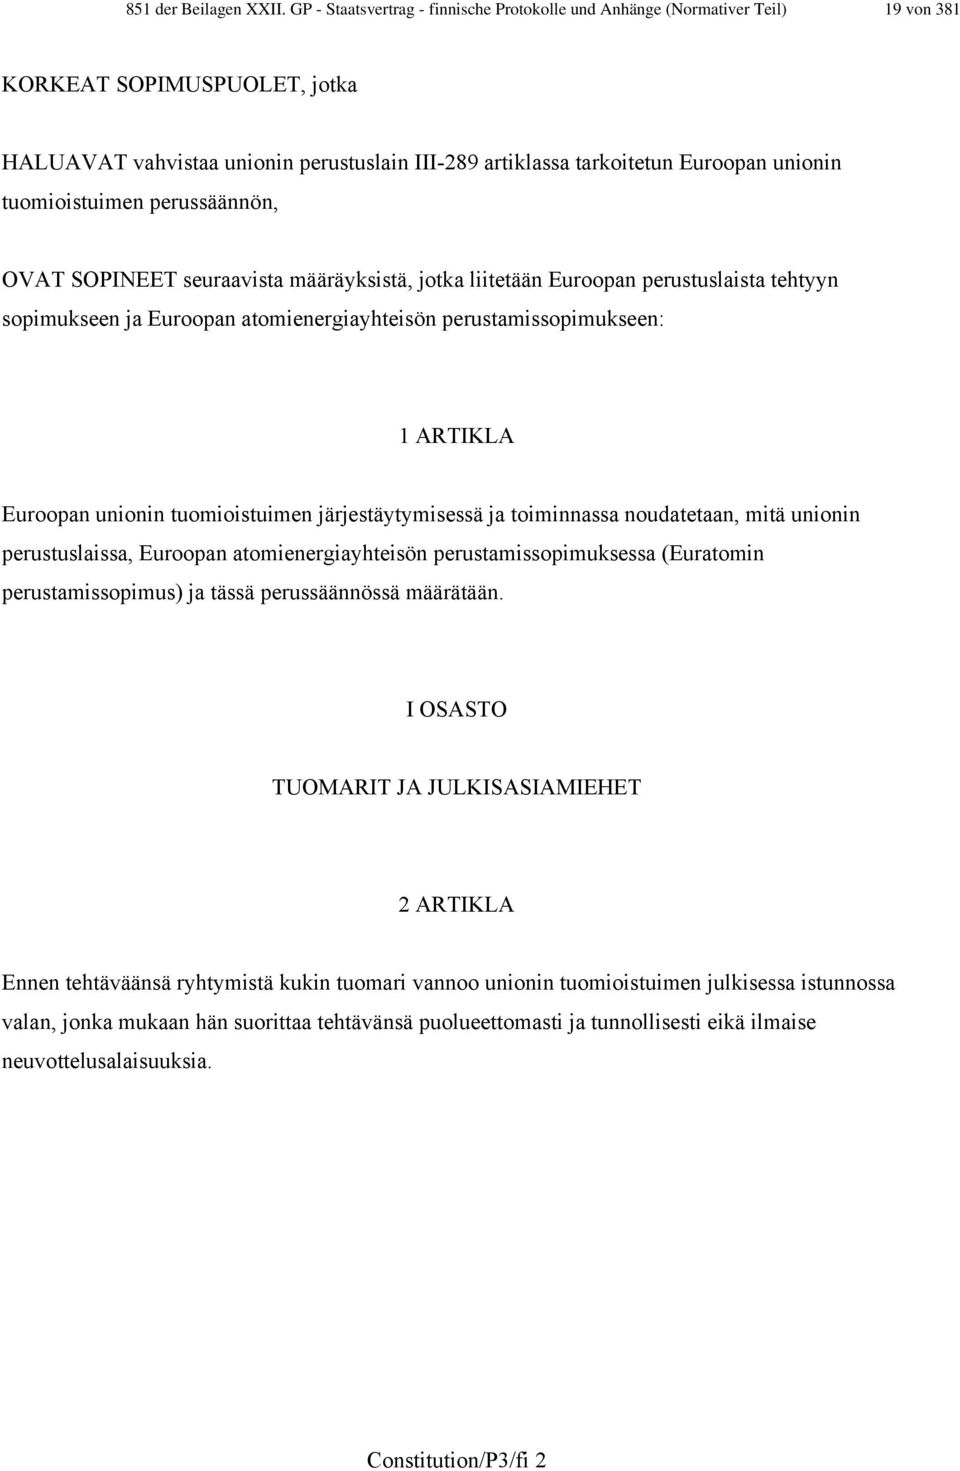 tuomioistuimen perussäännön, OVAT SOPINEET seuraavista määräyksistä, jotka liitetään Euroopan perustuslaista tehtyyn sopimukseen ja Euroopan atomienergiayhteisön perustamissopimukseen: 1 ARTIKLA